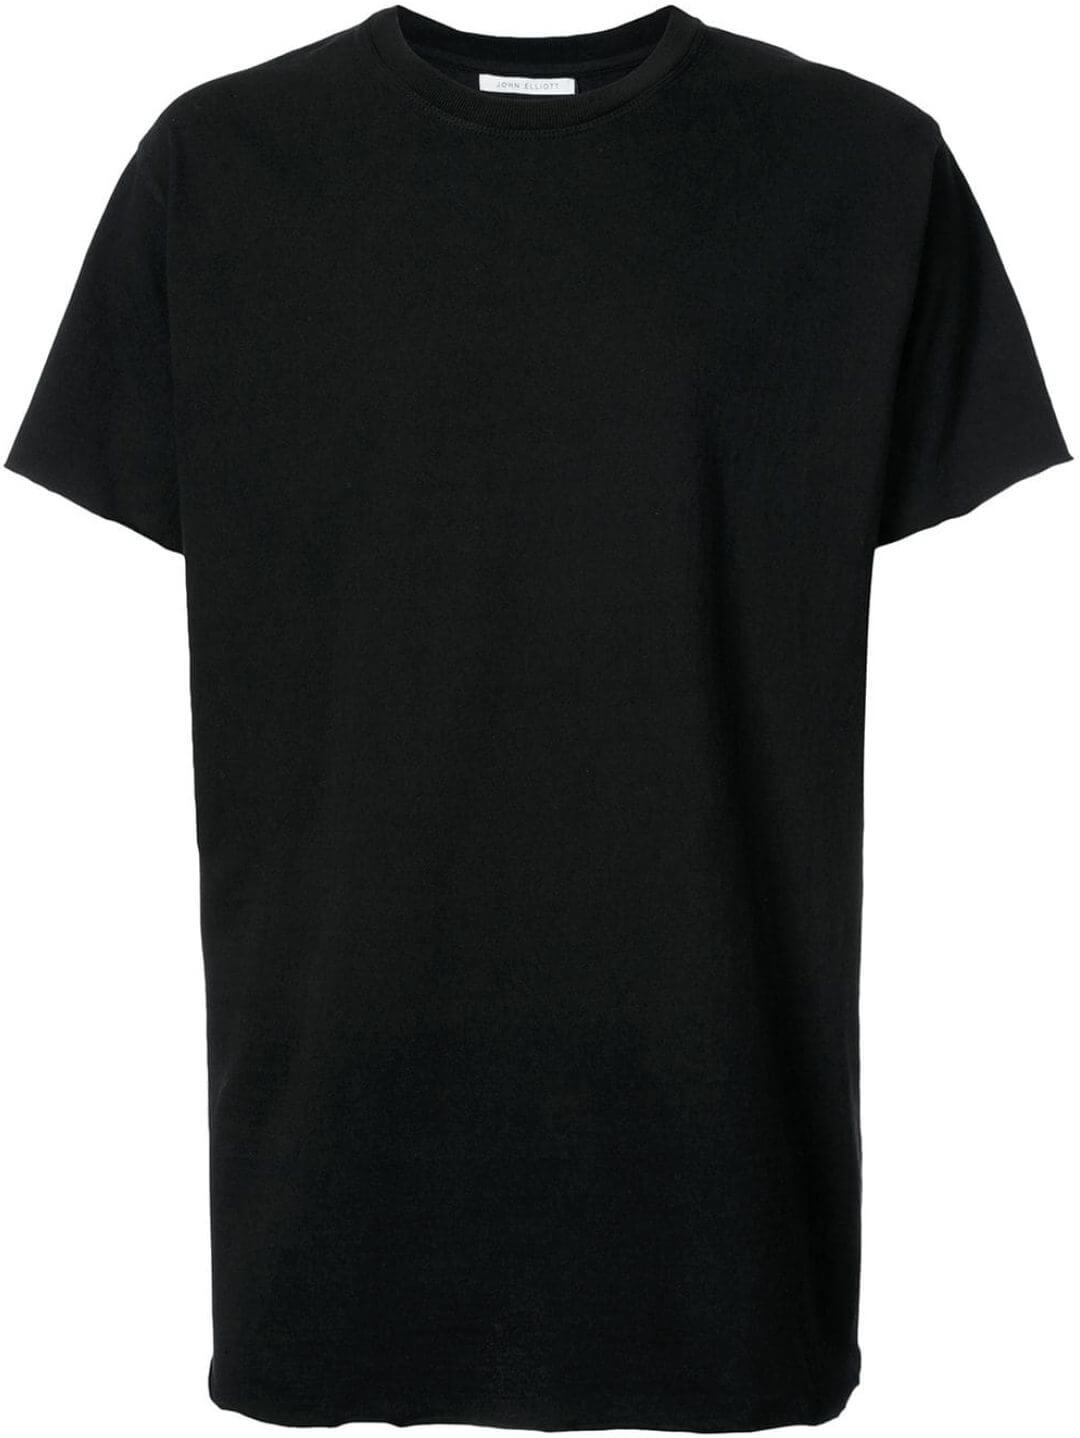 黒tシャツ コーデ メンズ特集 21最新 メンズファッションメディア Otokomaeotokomae 男前研究所